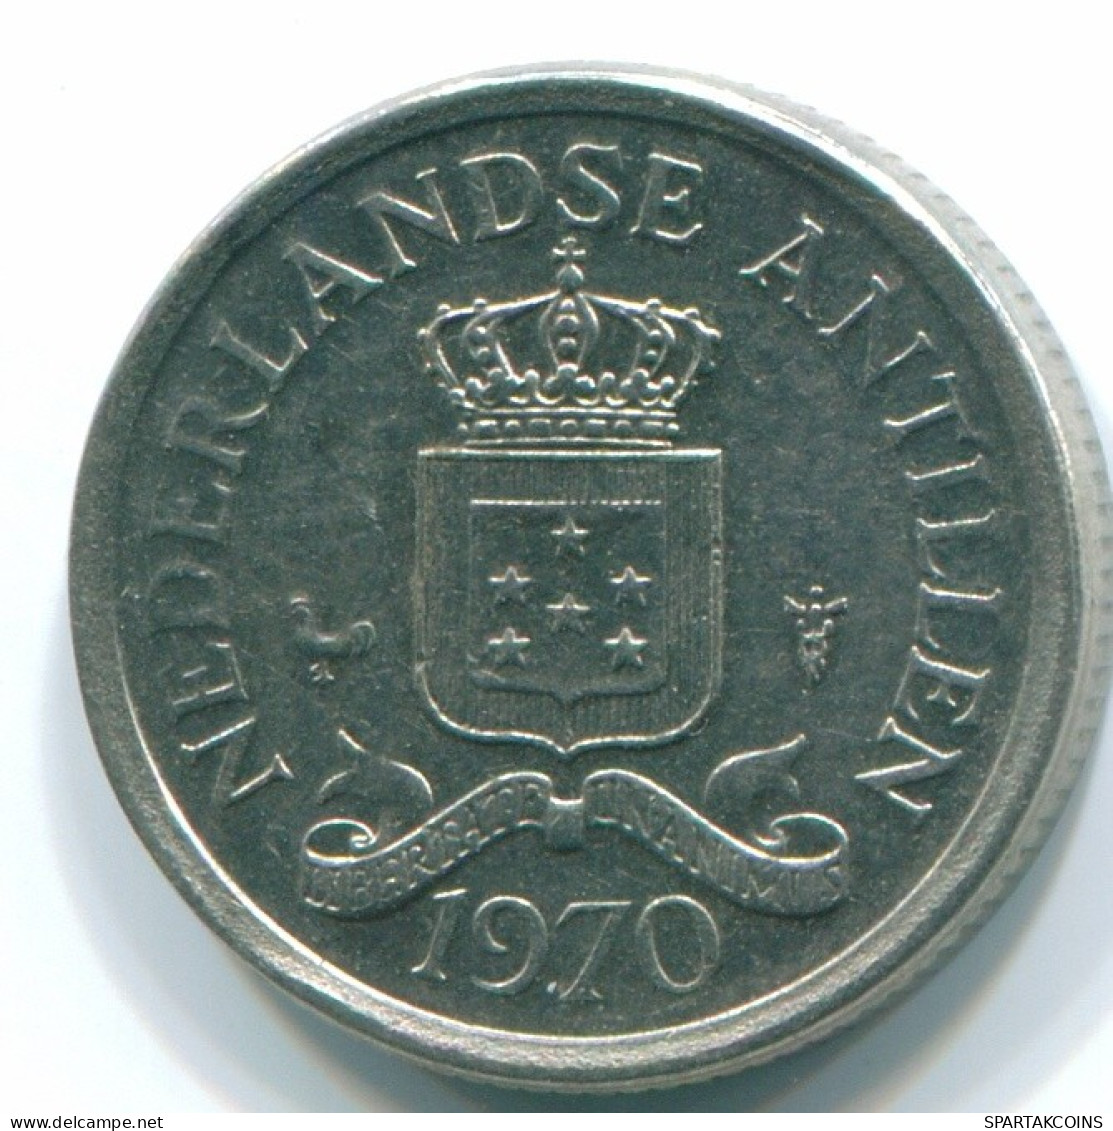 10 CENTS 1970 NIEDERLÄNDISCHE ANTILLEN Nickel Koloniale Münze #S13373.D.A - Antillas Neerlandesas